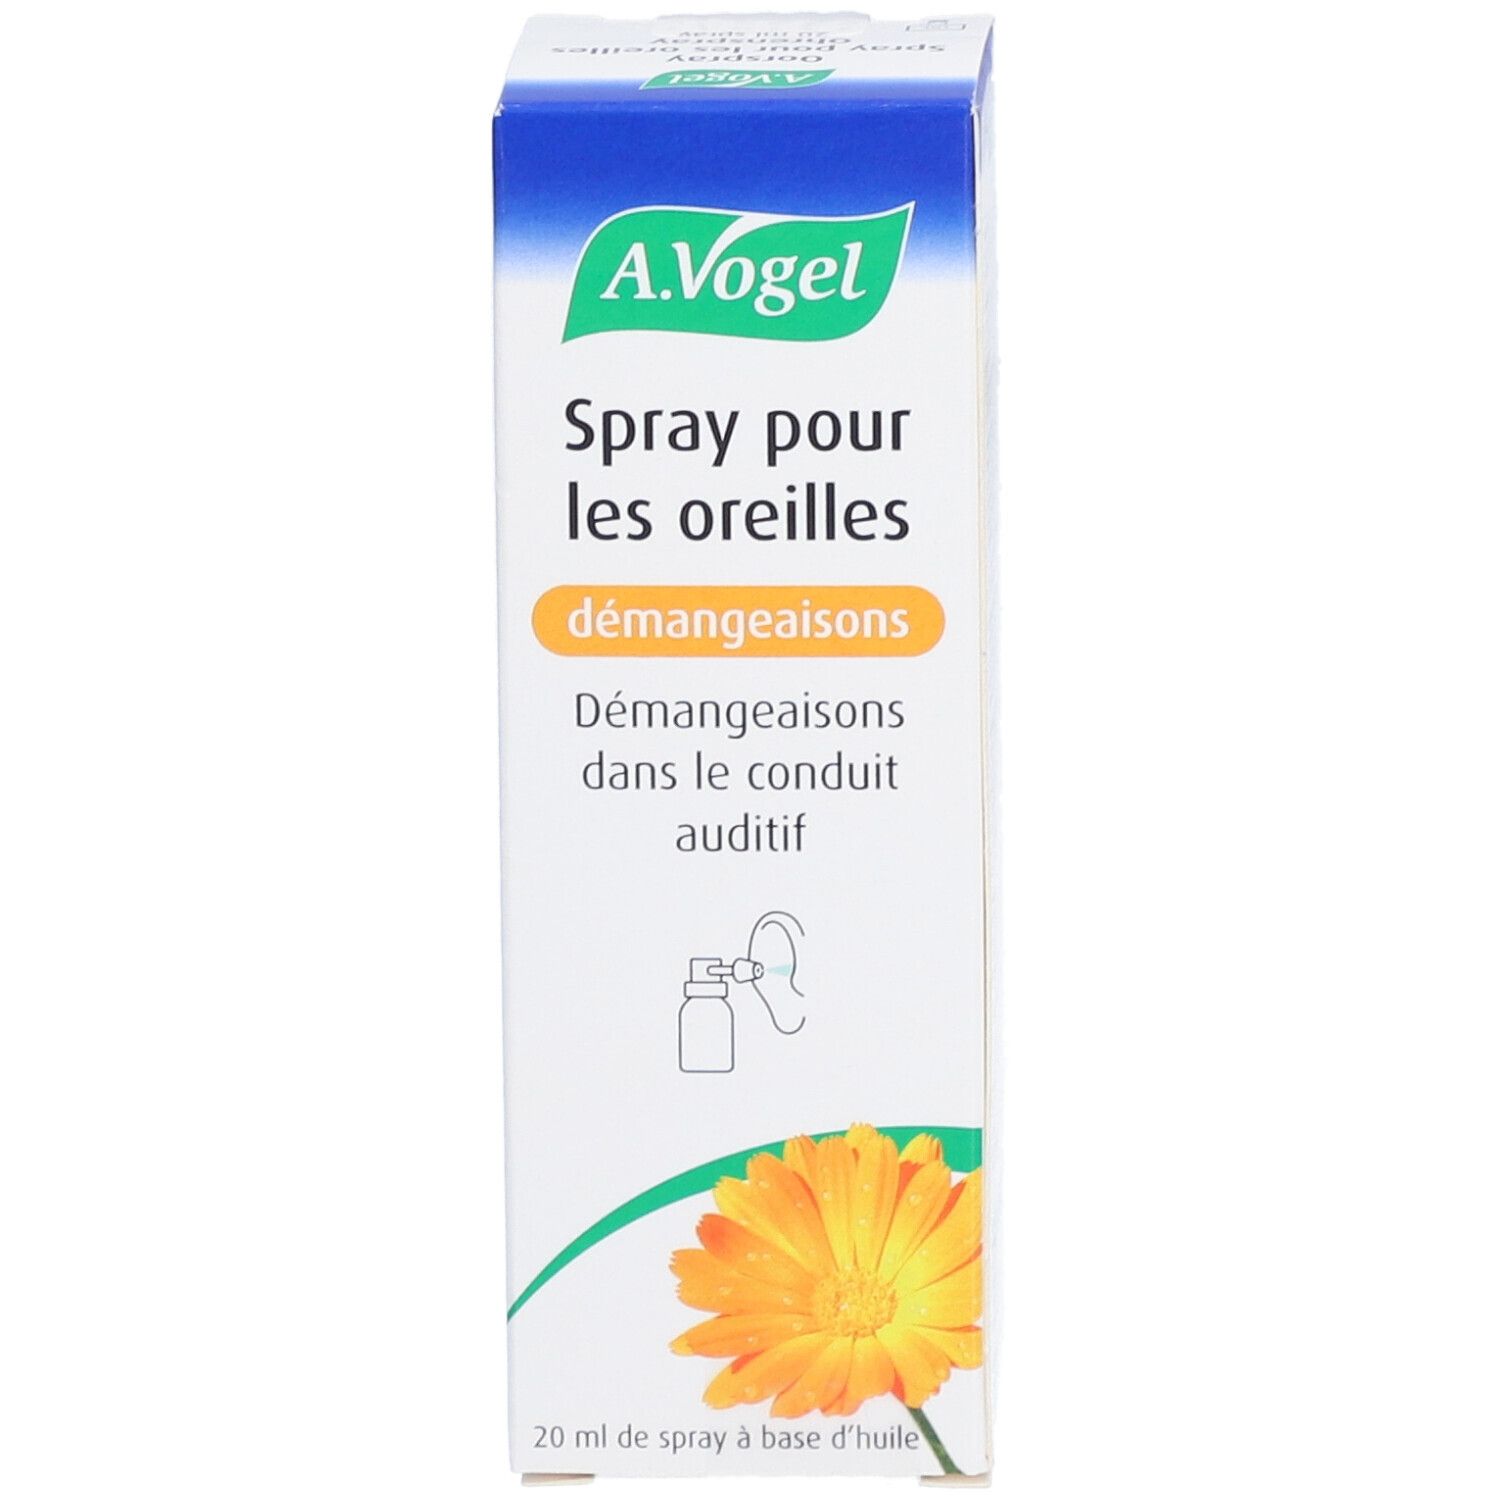 A.Vogel Cérumen Spray Pour Les Oreilles Hygiène De L'Oreille 20ml